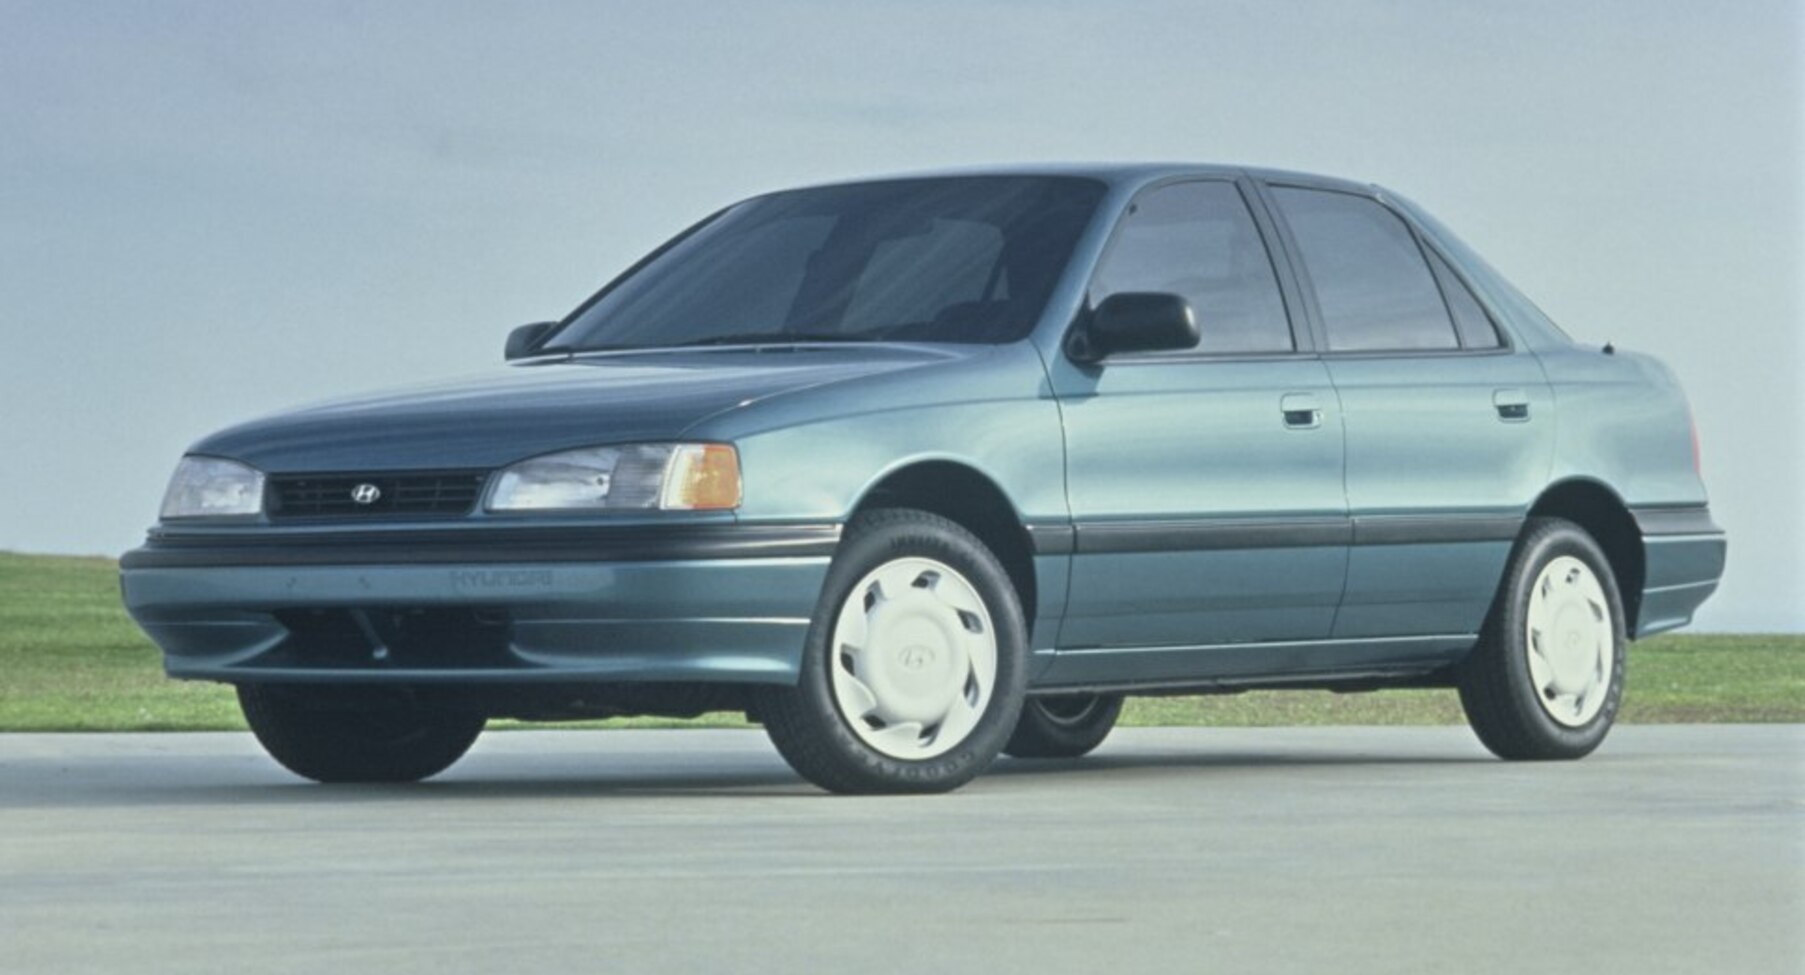 Hyundai Elantra I 1.5 i.e. (84 Hp) 1990, 1991, 1992, 1993, 1994, 1995 